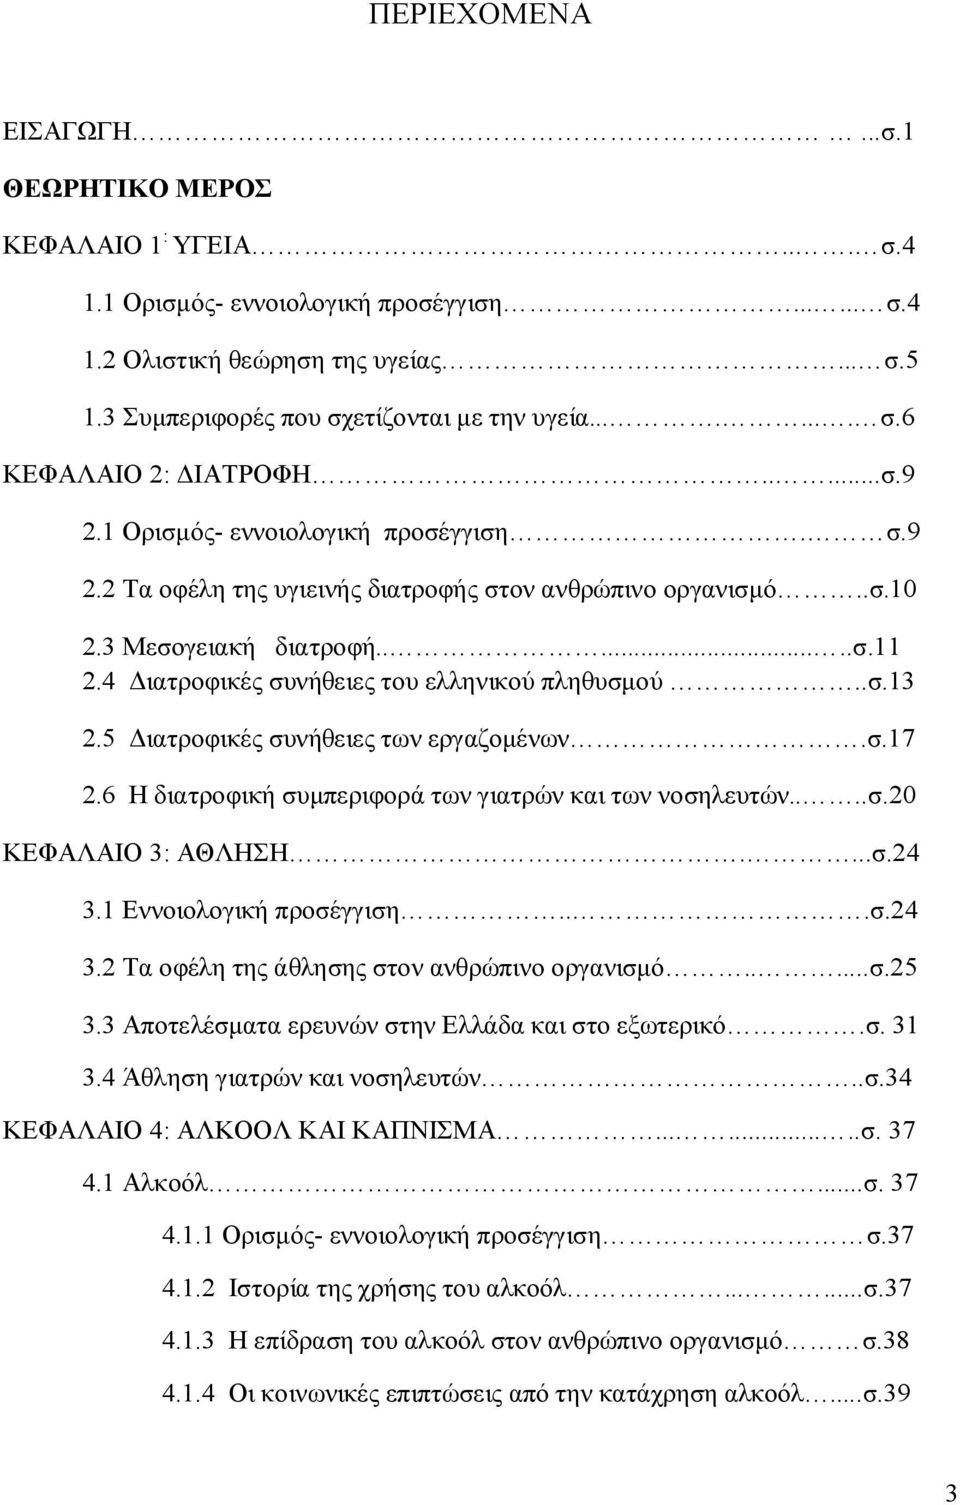 3 Μεσογειακή διατροφή.......σ.11 2.4 Διατροφικές συνήθειες του ελληνικού πληθυσμού..σ.13 2.5 Διατροφικές συνήθειες των εργαζομένων.σ.17 2.6 Η διατροφική συμπεριφορά των γιατρών και των νοσηλευτών....σ.20 ΚΕΦΑΛΑΙΟ 3: ΑΘΛΗΣΗ.